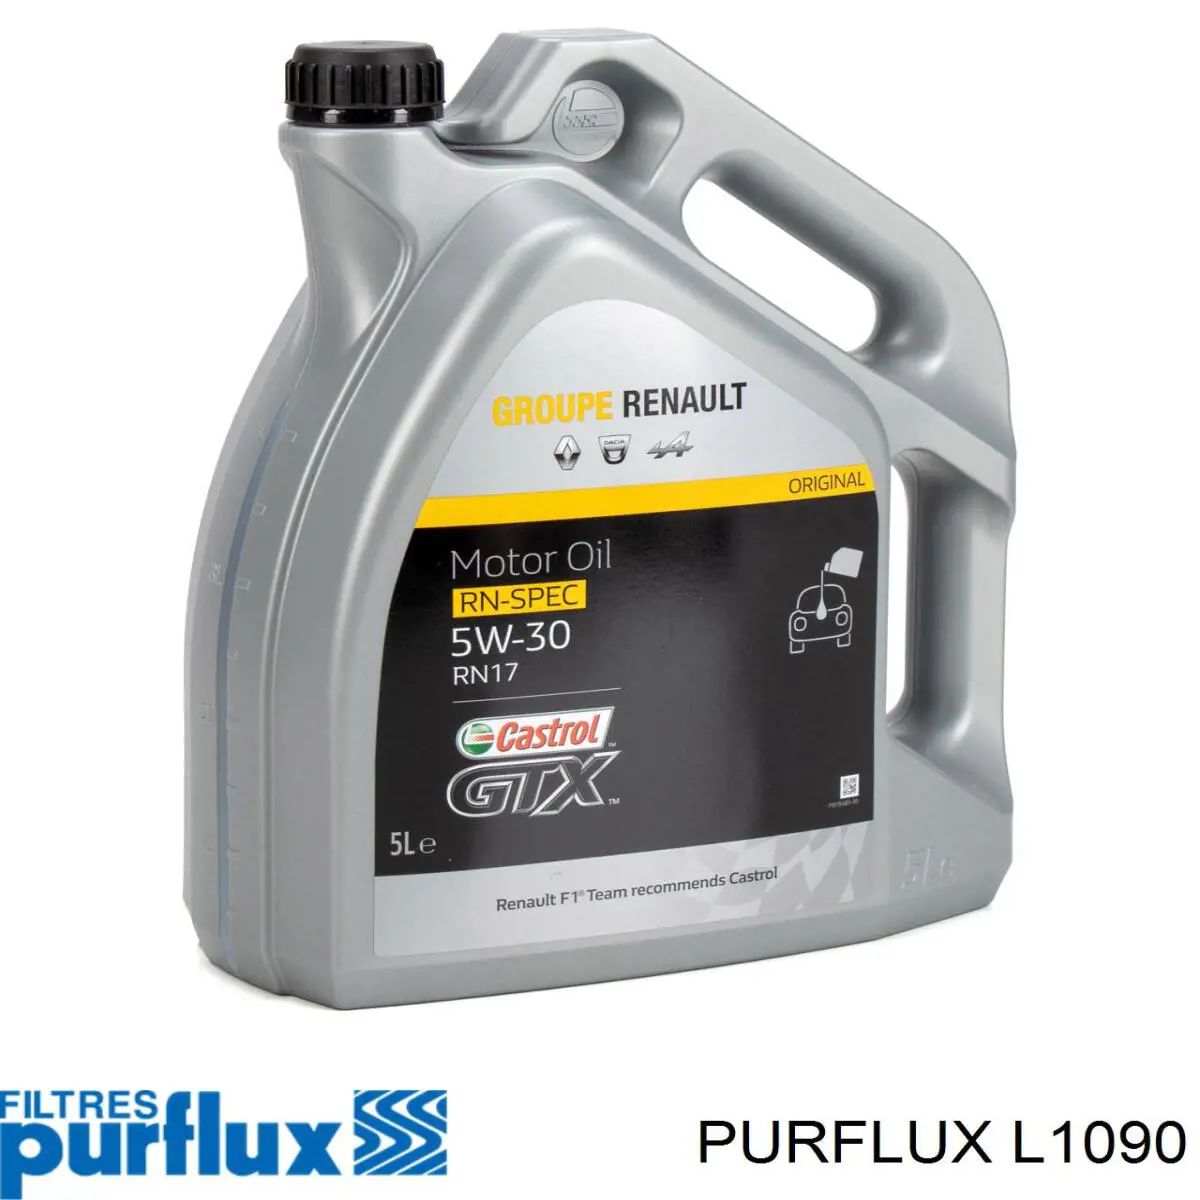 L1090 Purflux filtro de aceite